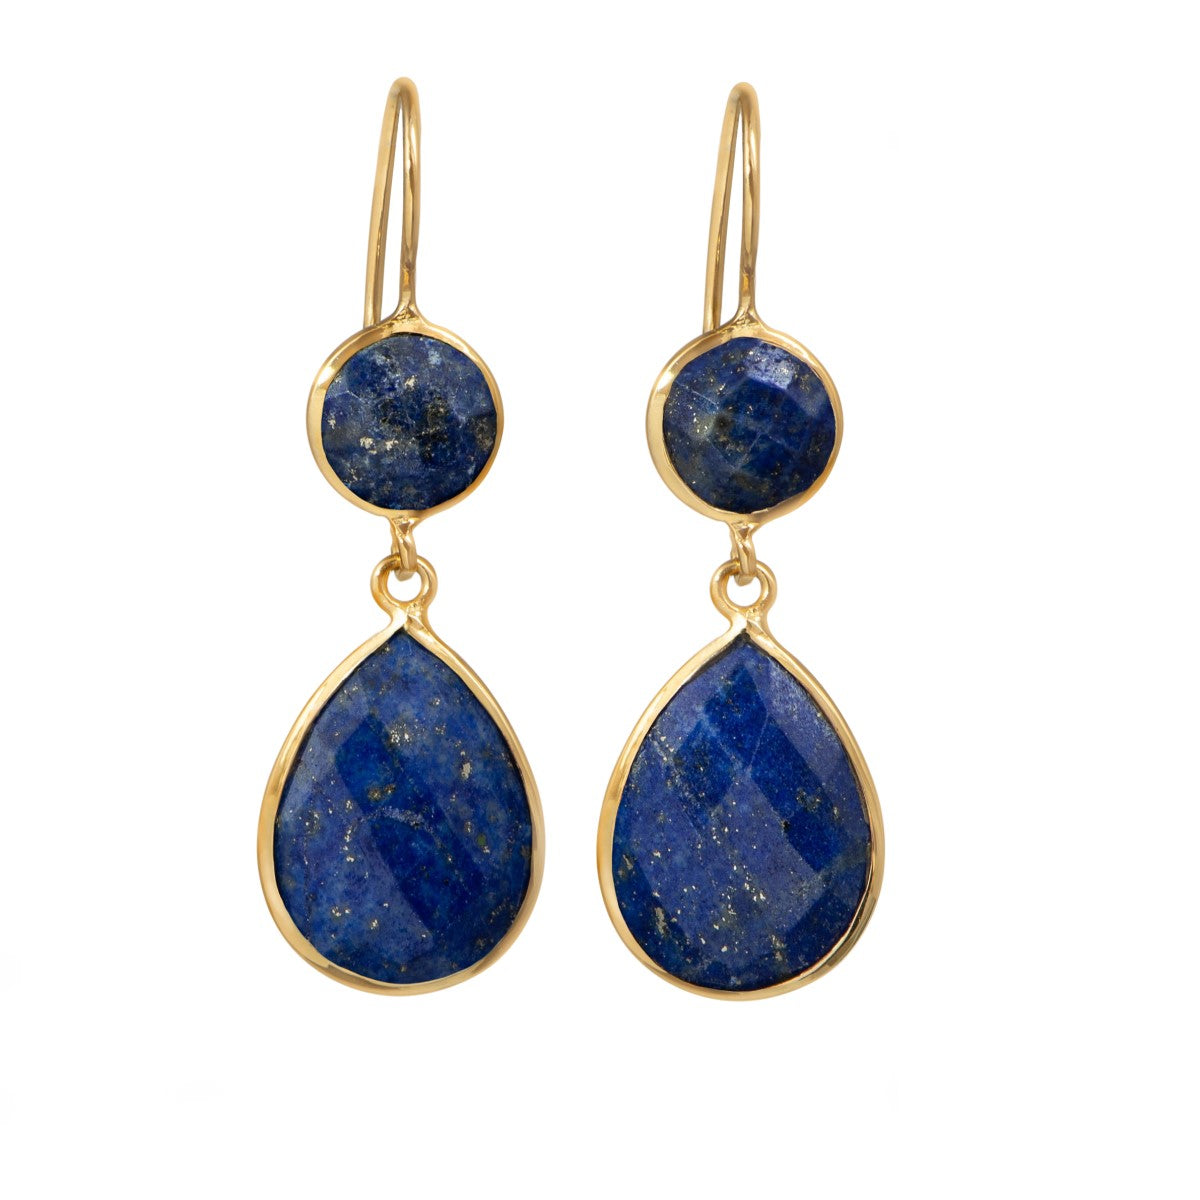 Lapis Lazuli Gemstone Two Stone Earrings in Gold Plated Sterling Silver - Teardrop